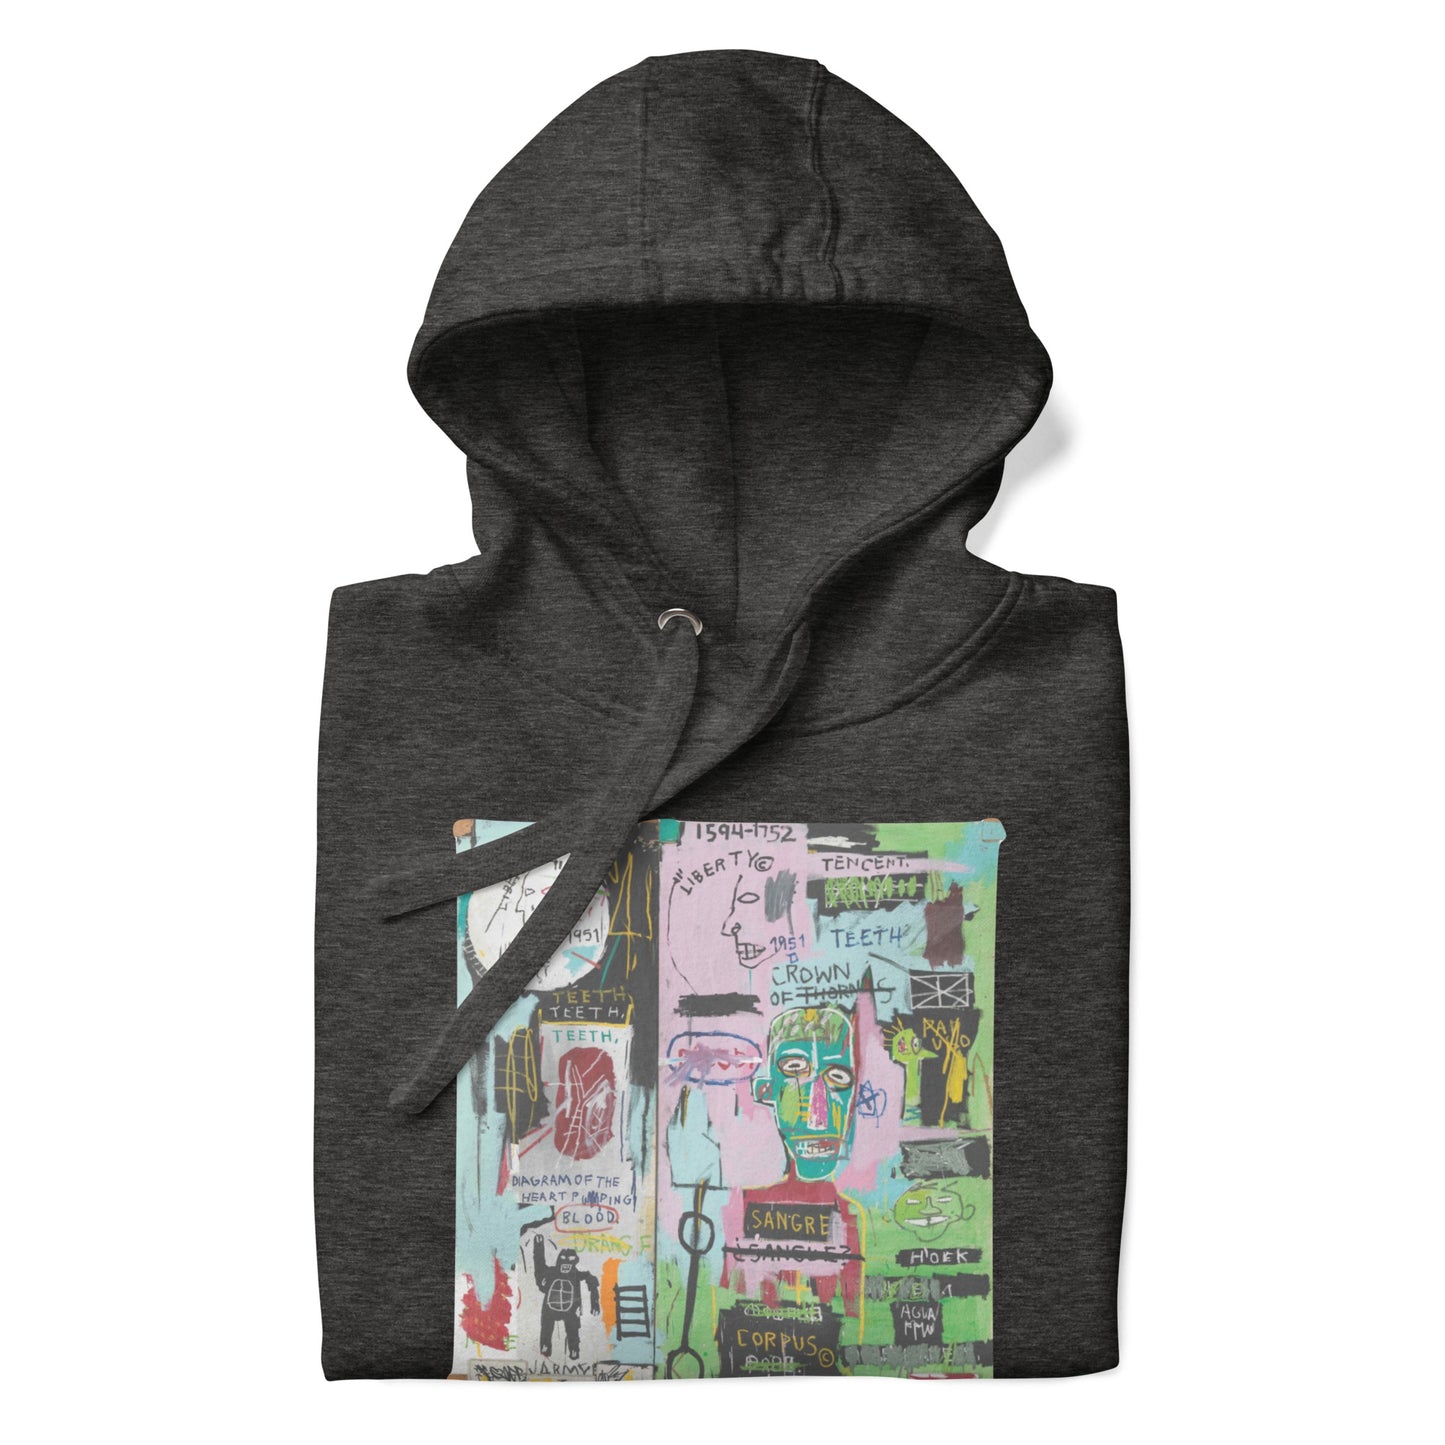 Jean-Michel Basquiat "In Italian" Artwork Printed Premium Streetwear Sweatshirt Hoodie Charcoal Grey